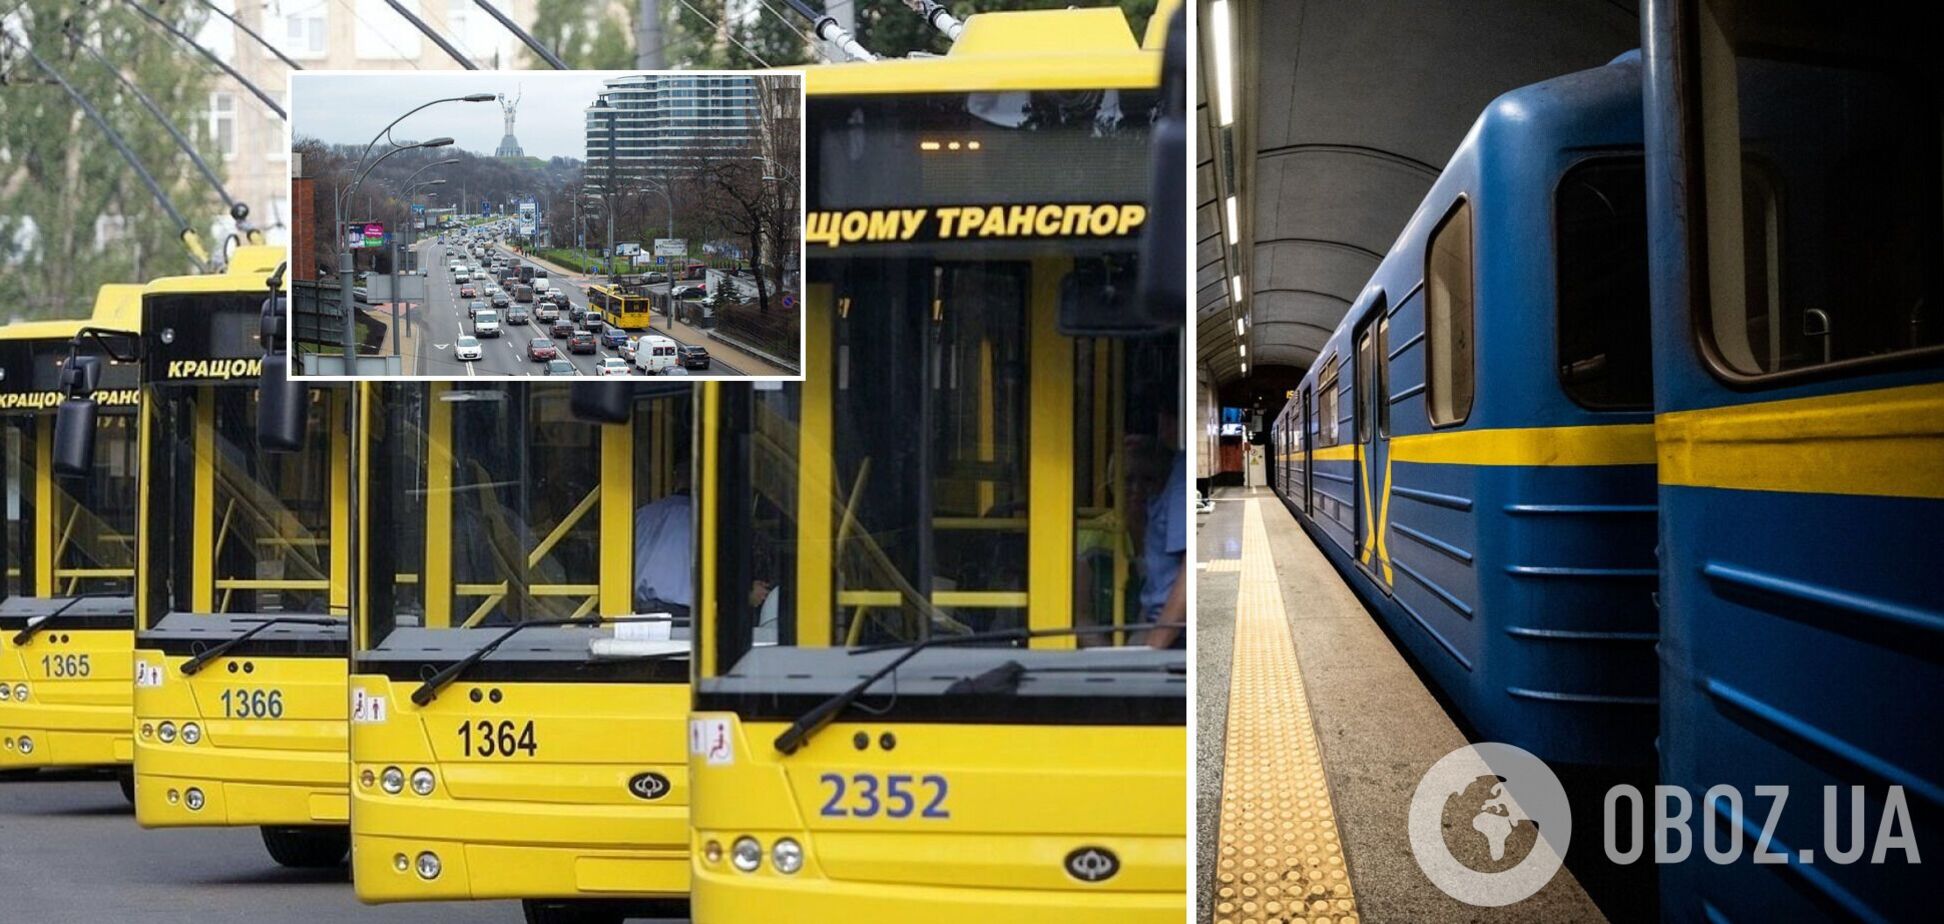 Общественный транспорт в Киеве вернется к обычному режиму работы: в КГГА обнародовали график